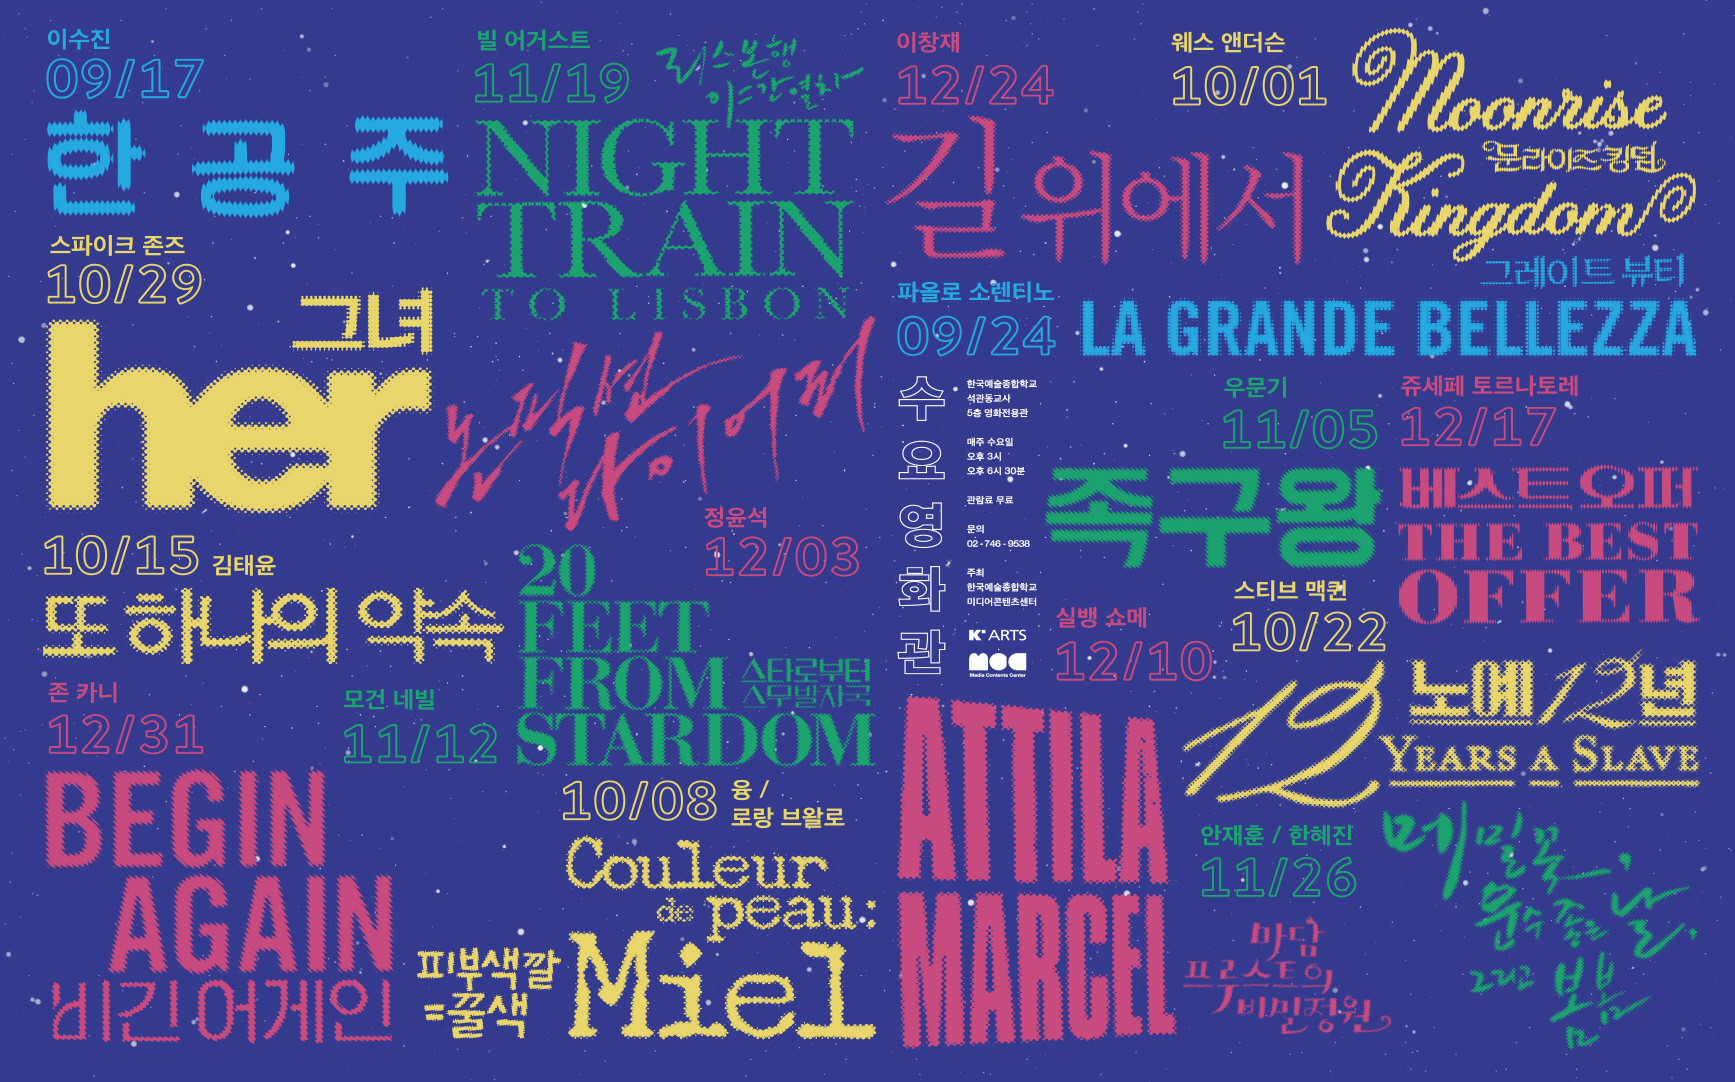 한국예술종합학교 영화전용관 행사 홍보 포스터